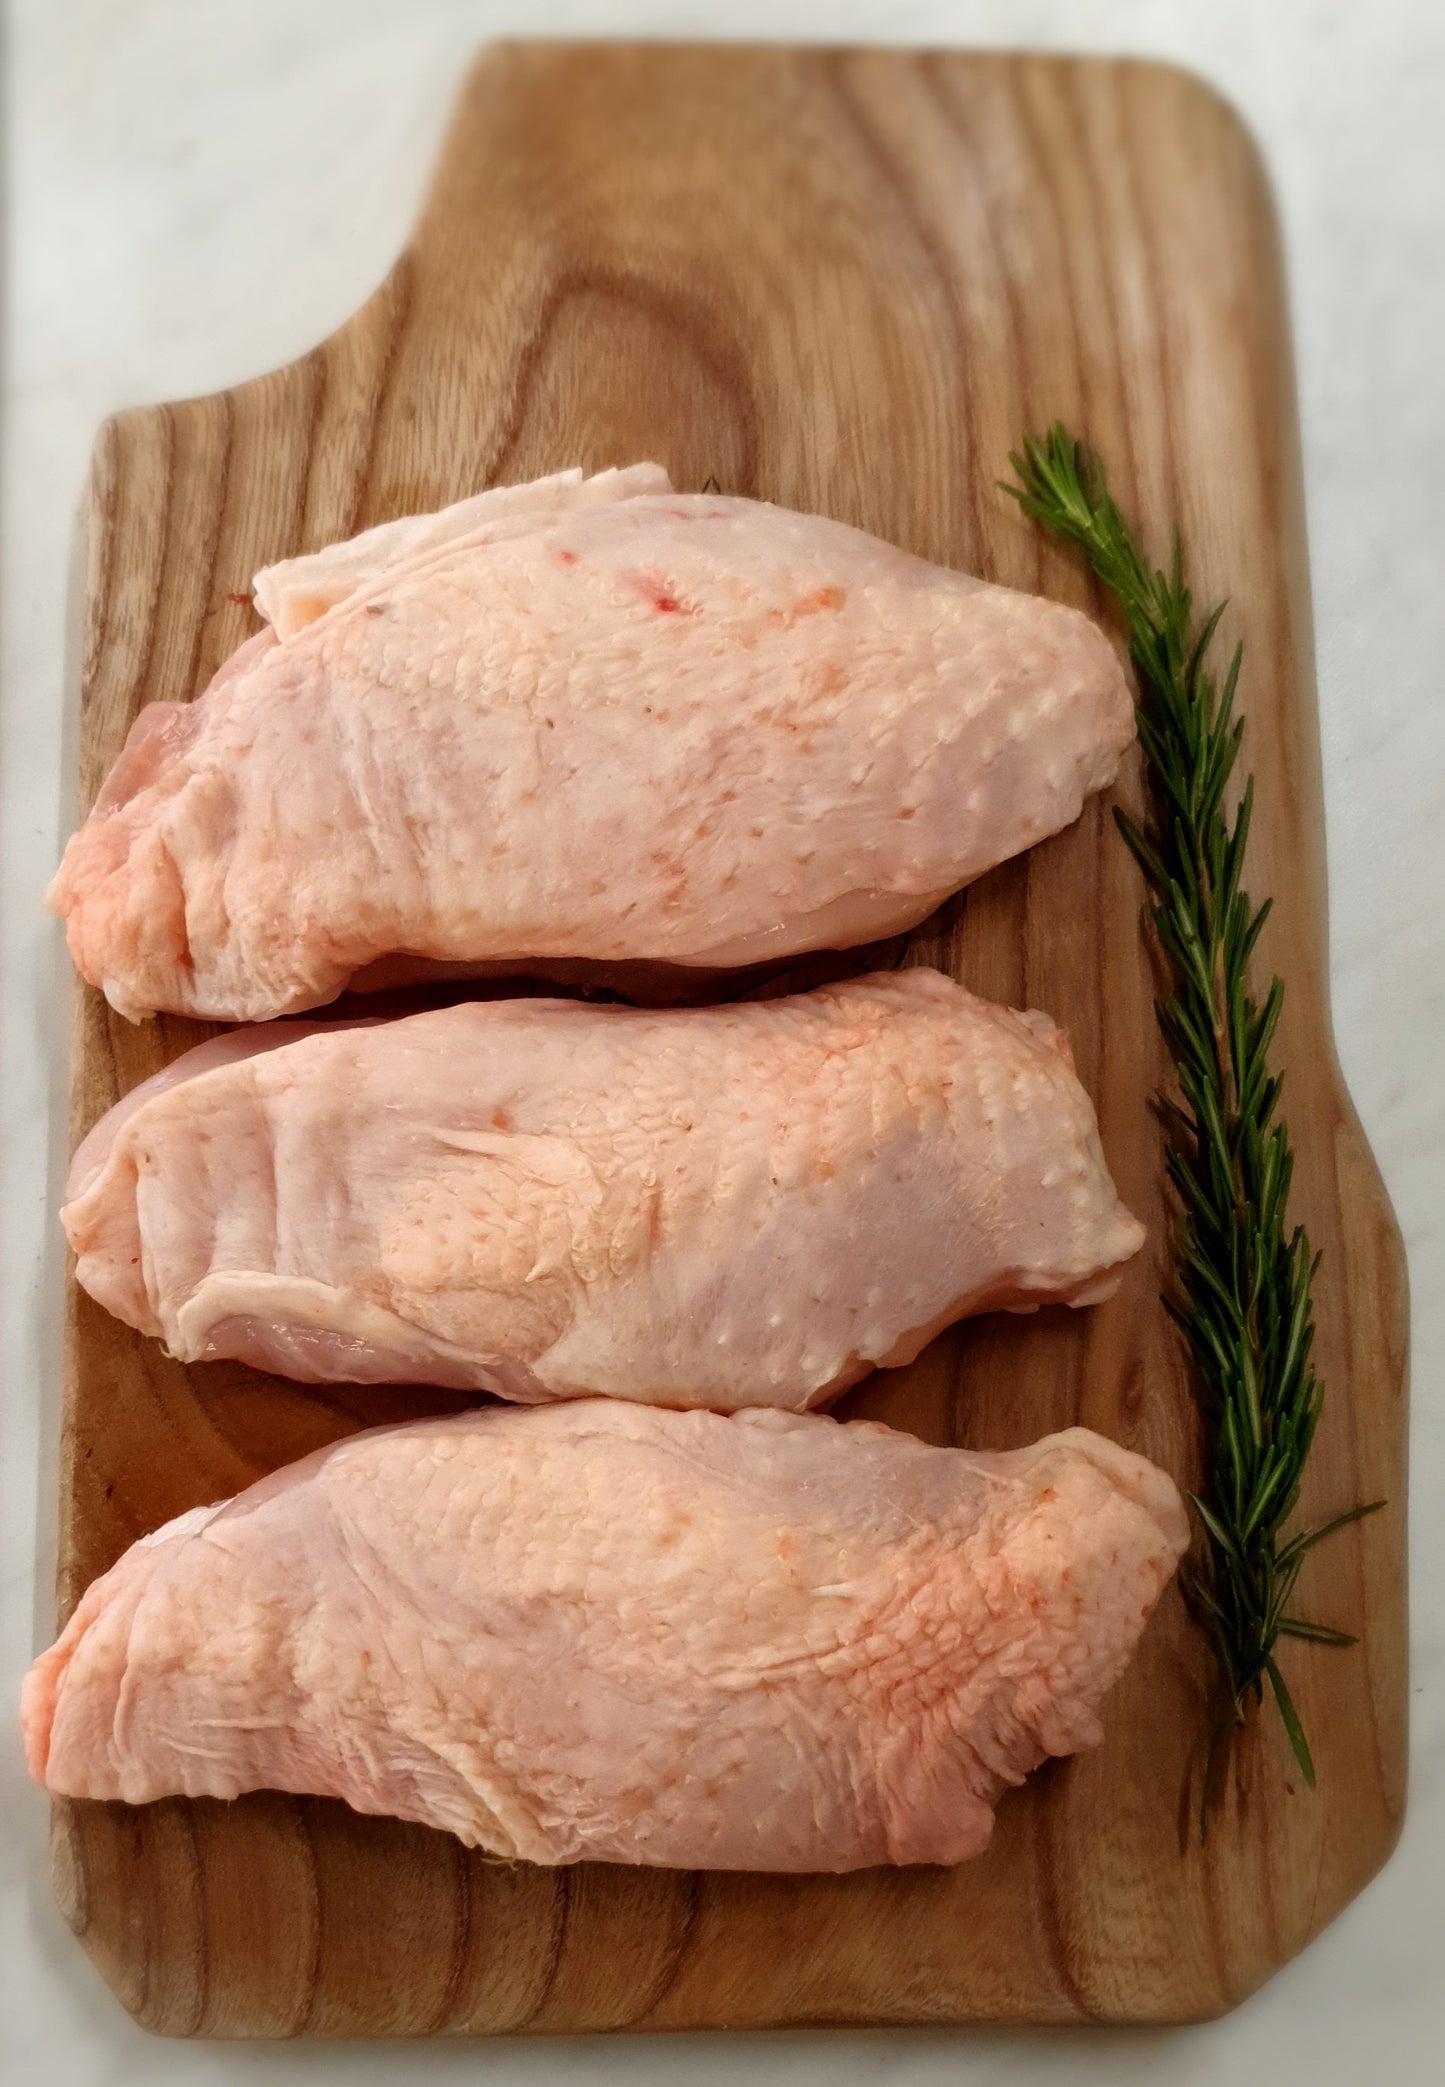 1 Free Range Sutton Hoo Chicken Breast